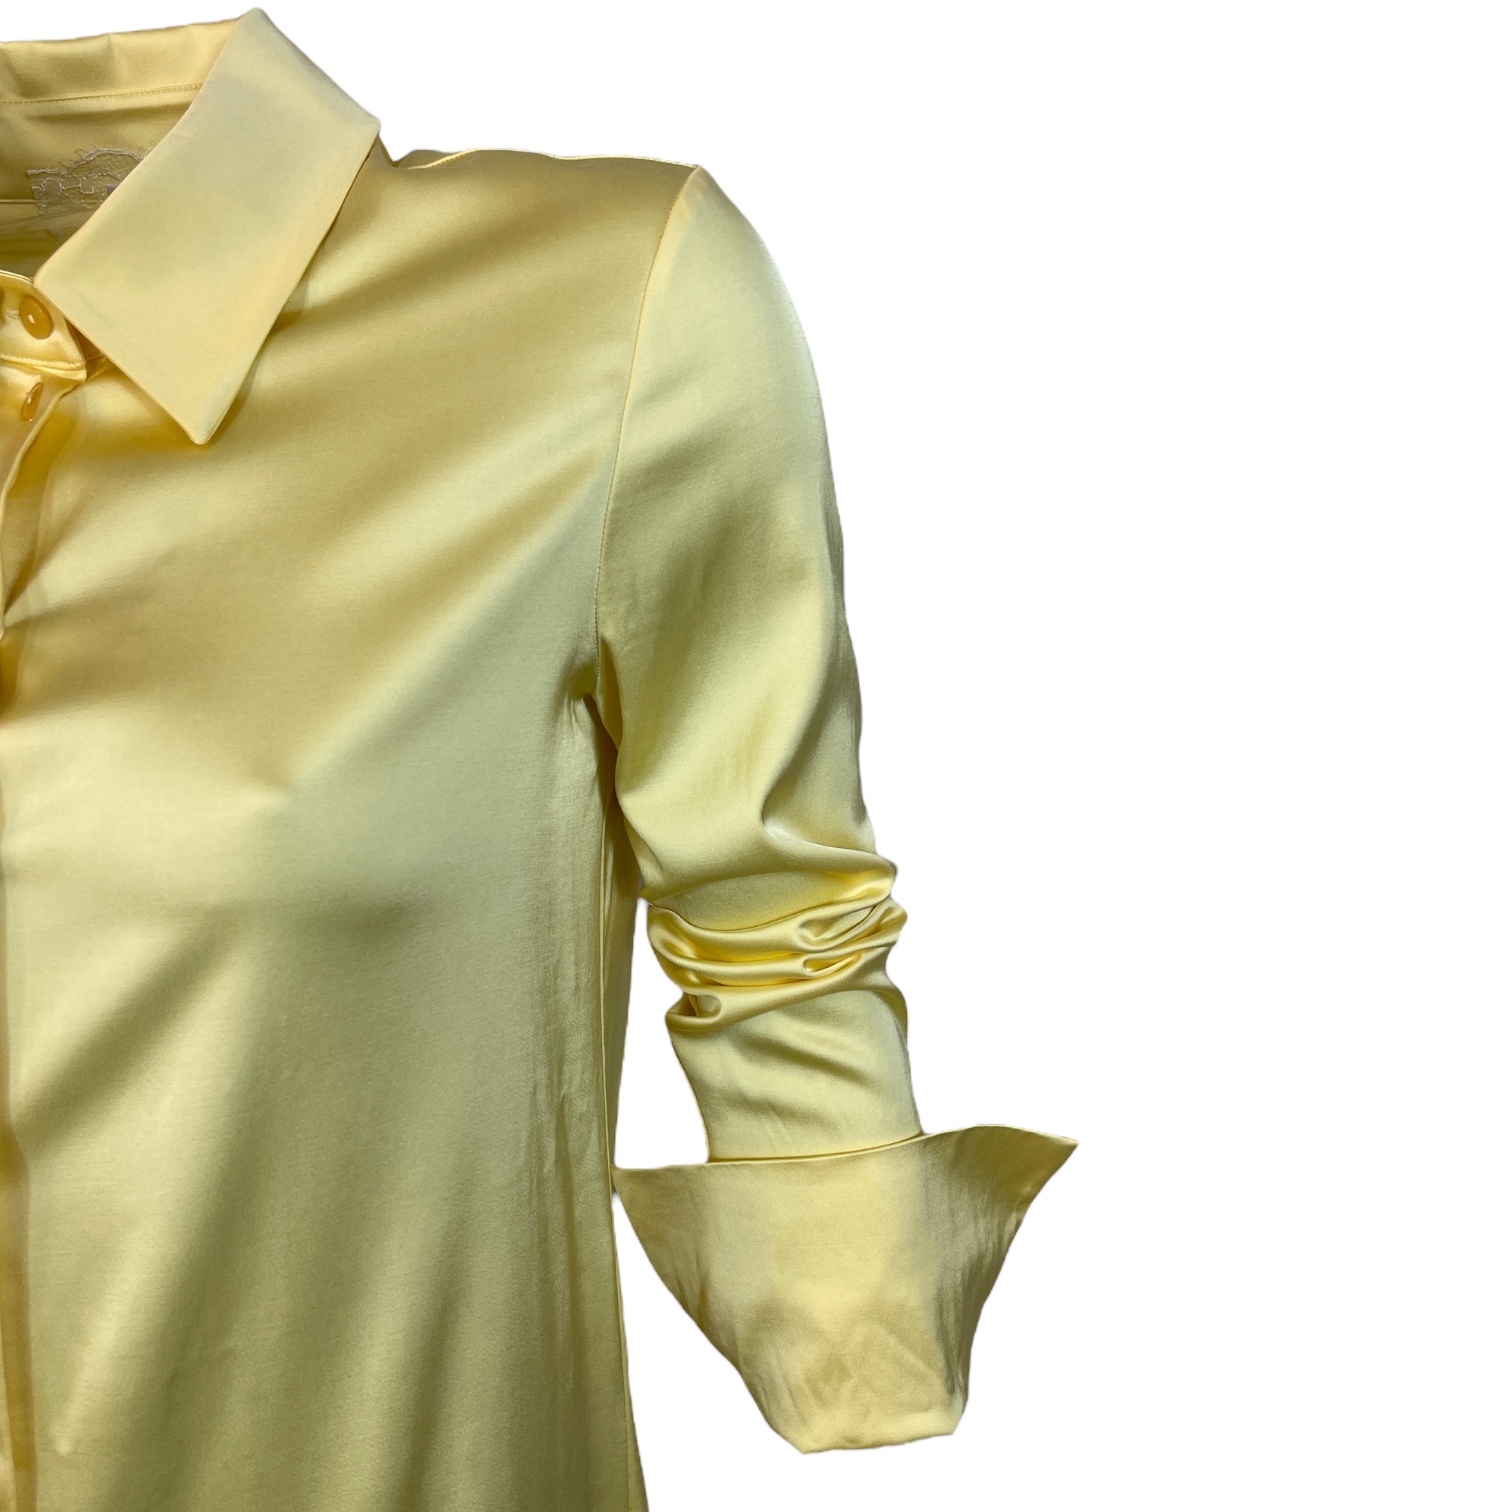 PATRIZIA PEPE 2C1471 A051  Hemdblusenkleid mit dezentem Glanz Satinkleid Clarity Yellow Gelb